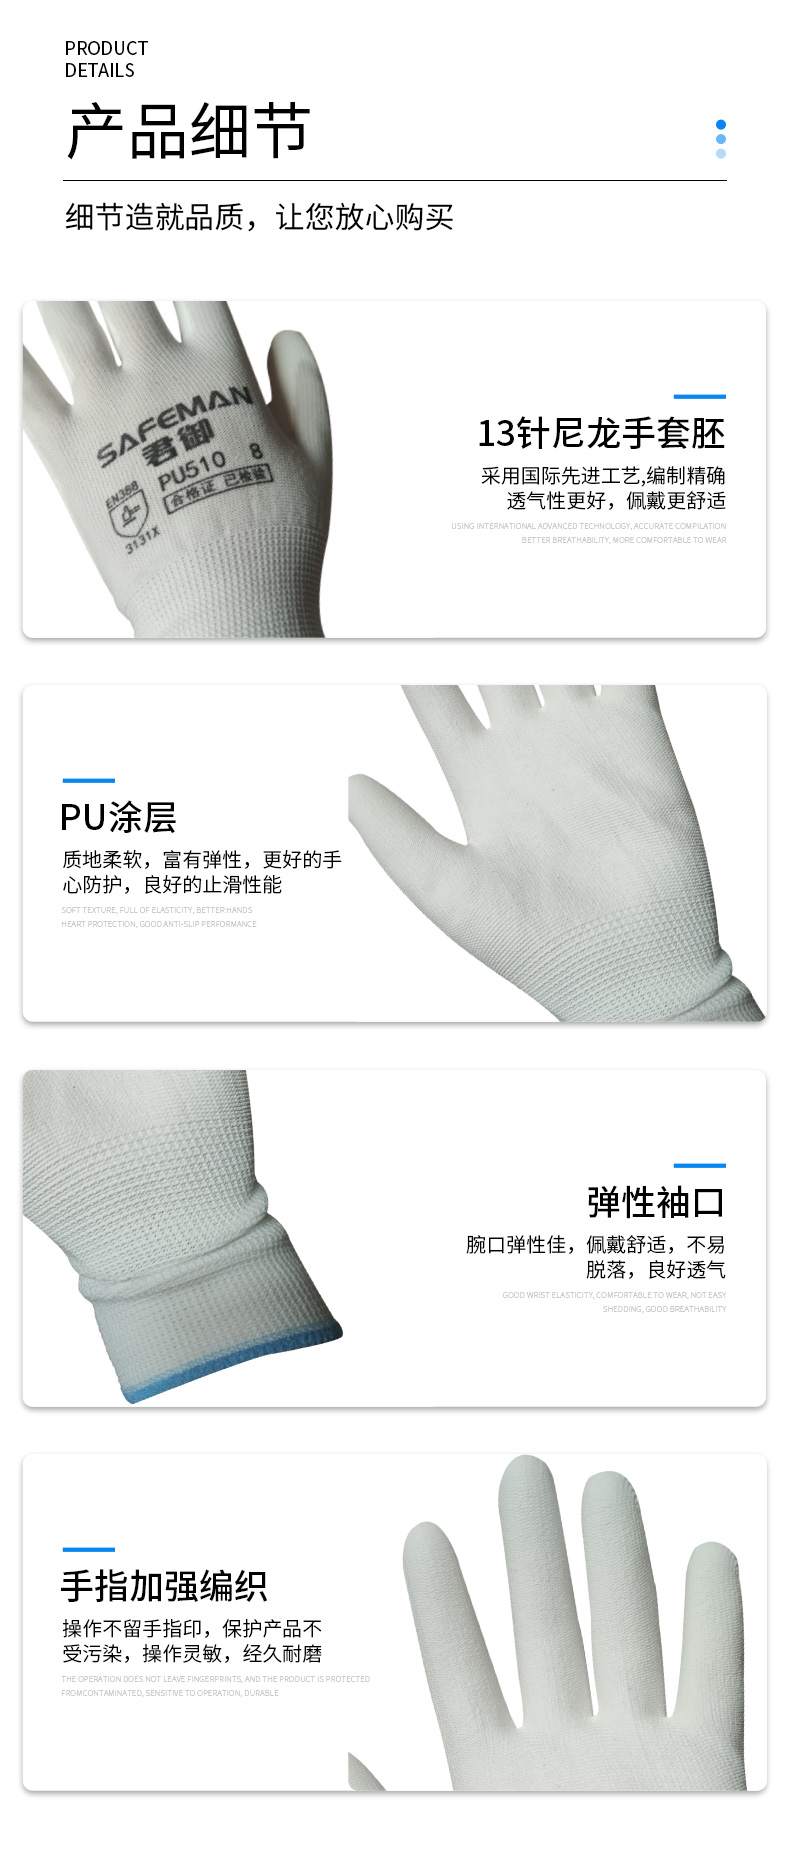 君御 PU510尼龙PU涂层手套白色-8